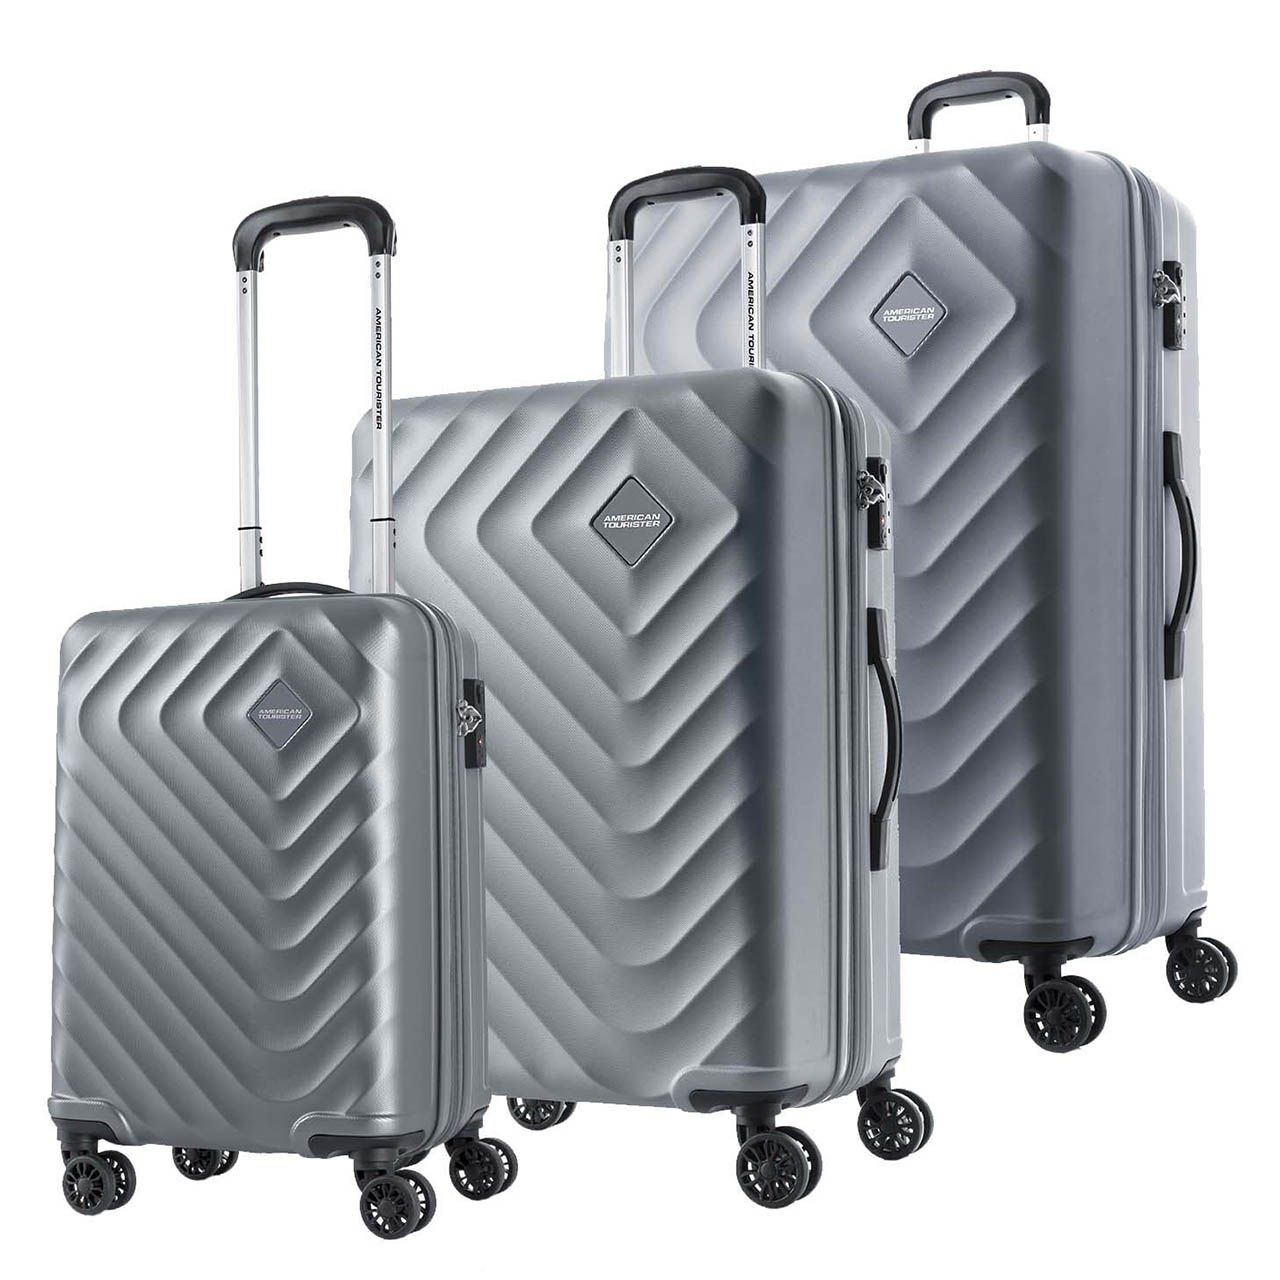 مجموعه سه عددی چمدان امریکن توریستر مدل SENNA QC5 -  - 2